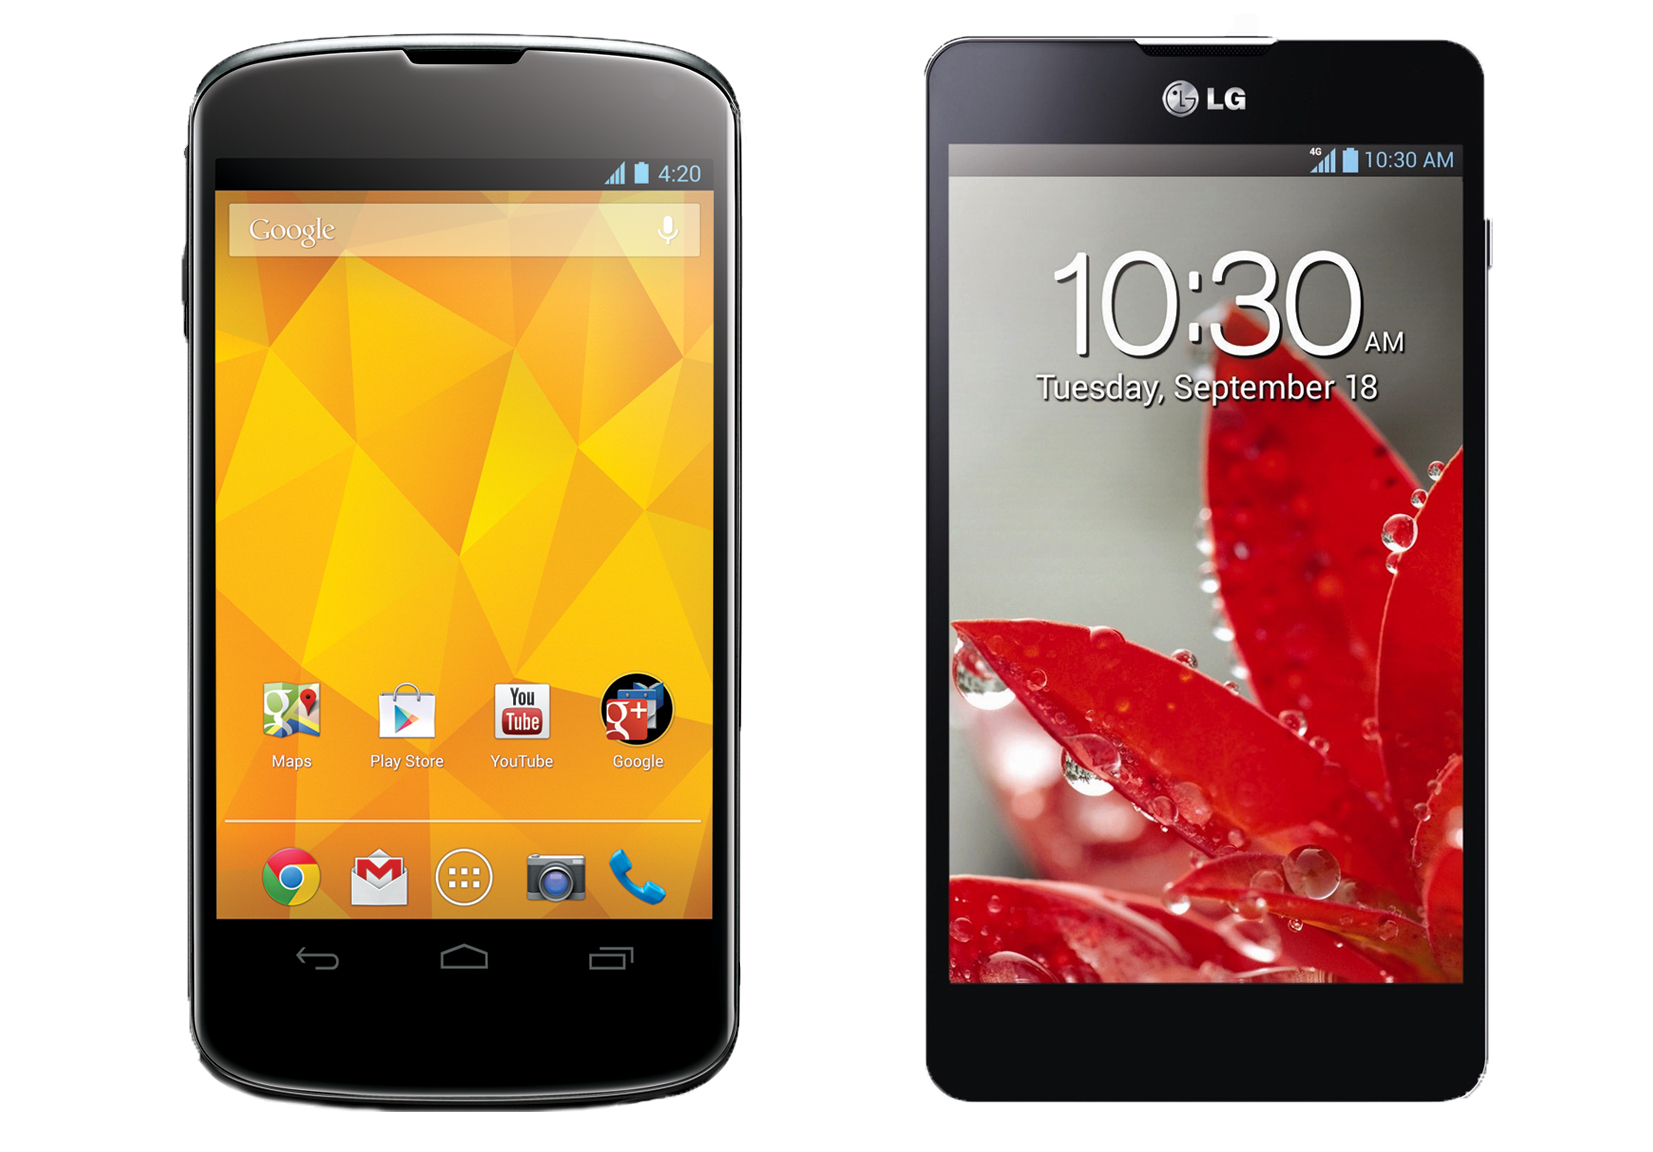 Nexus 4 and LG Optimus G